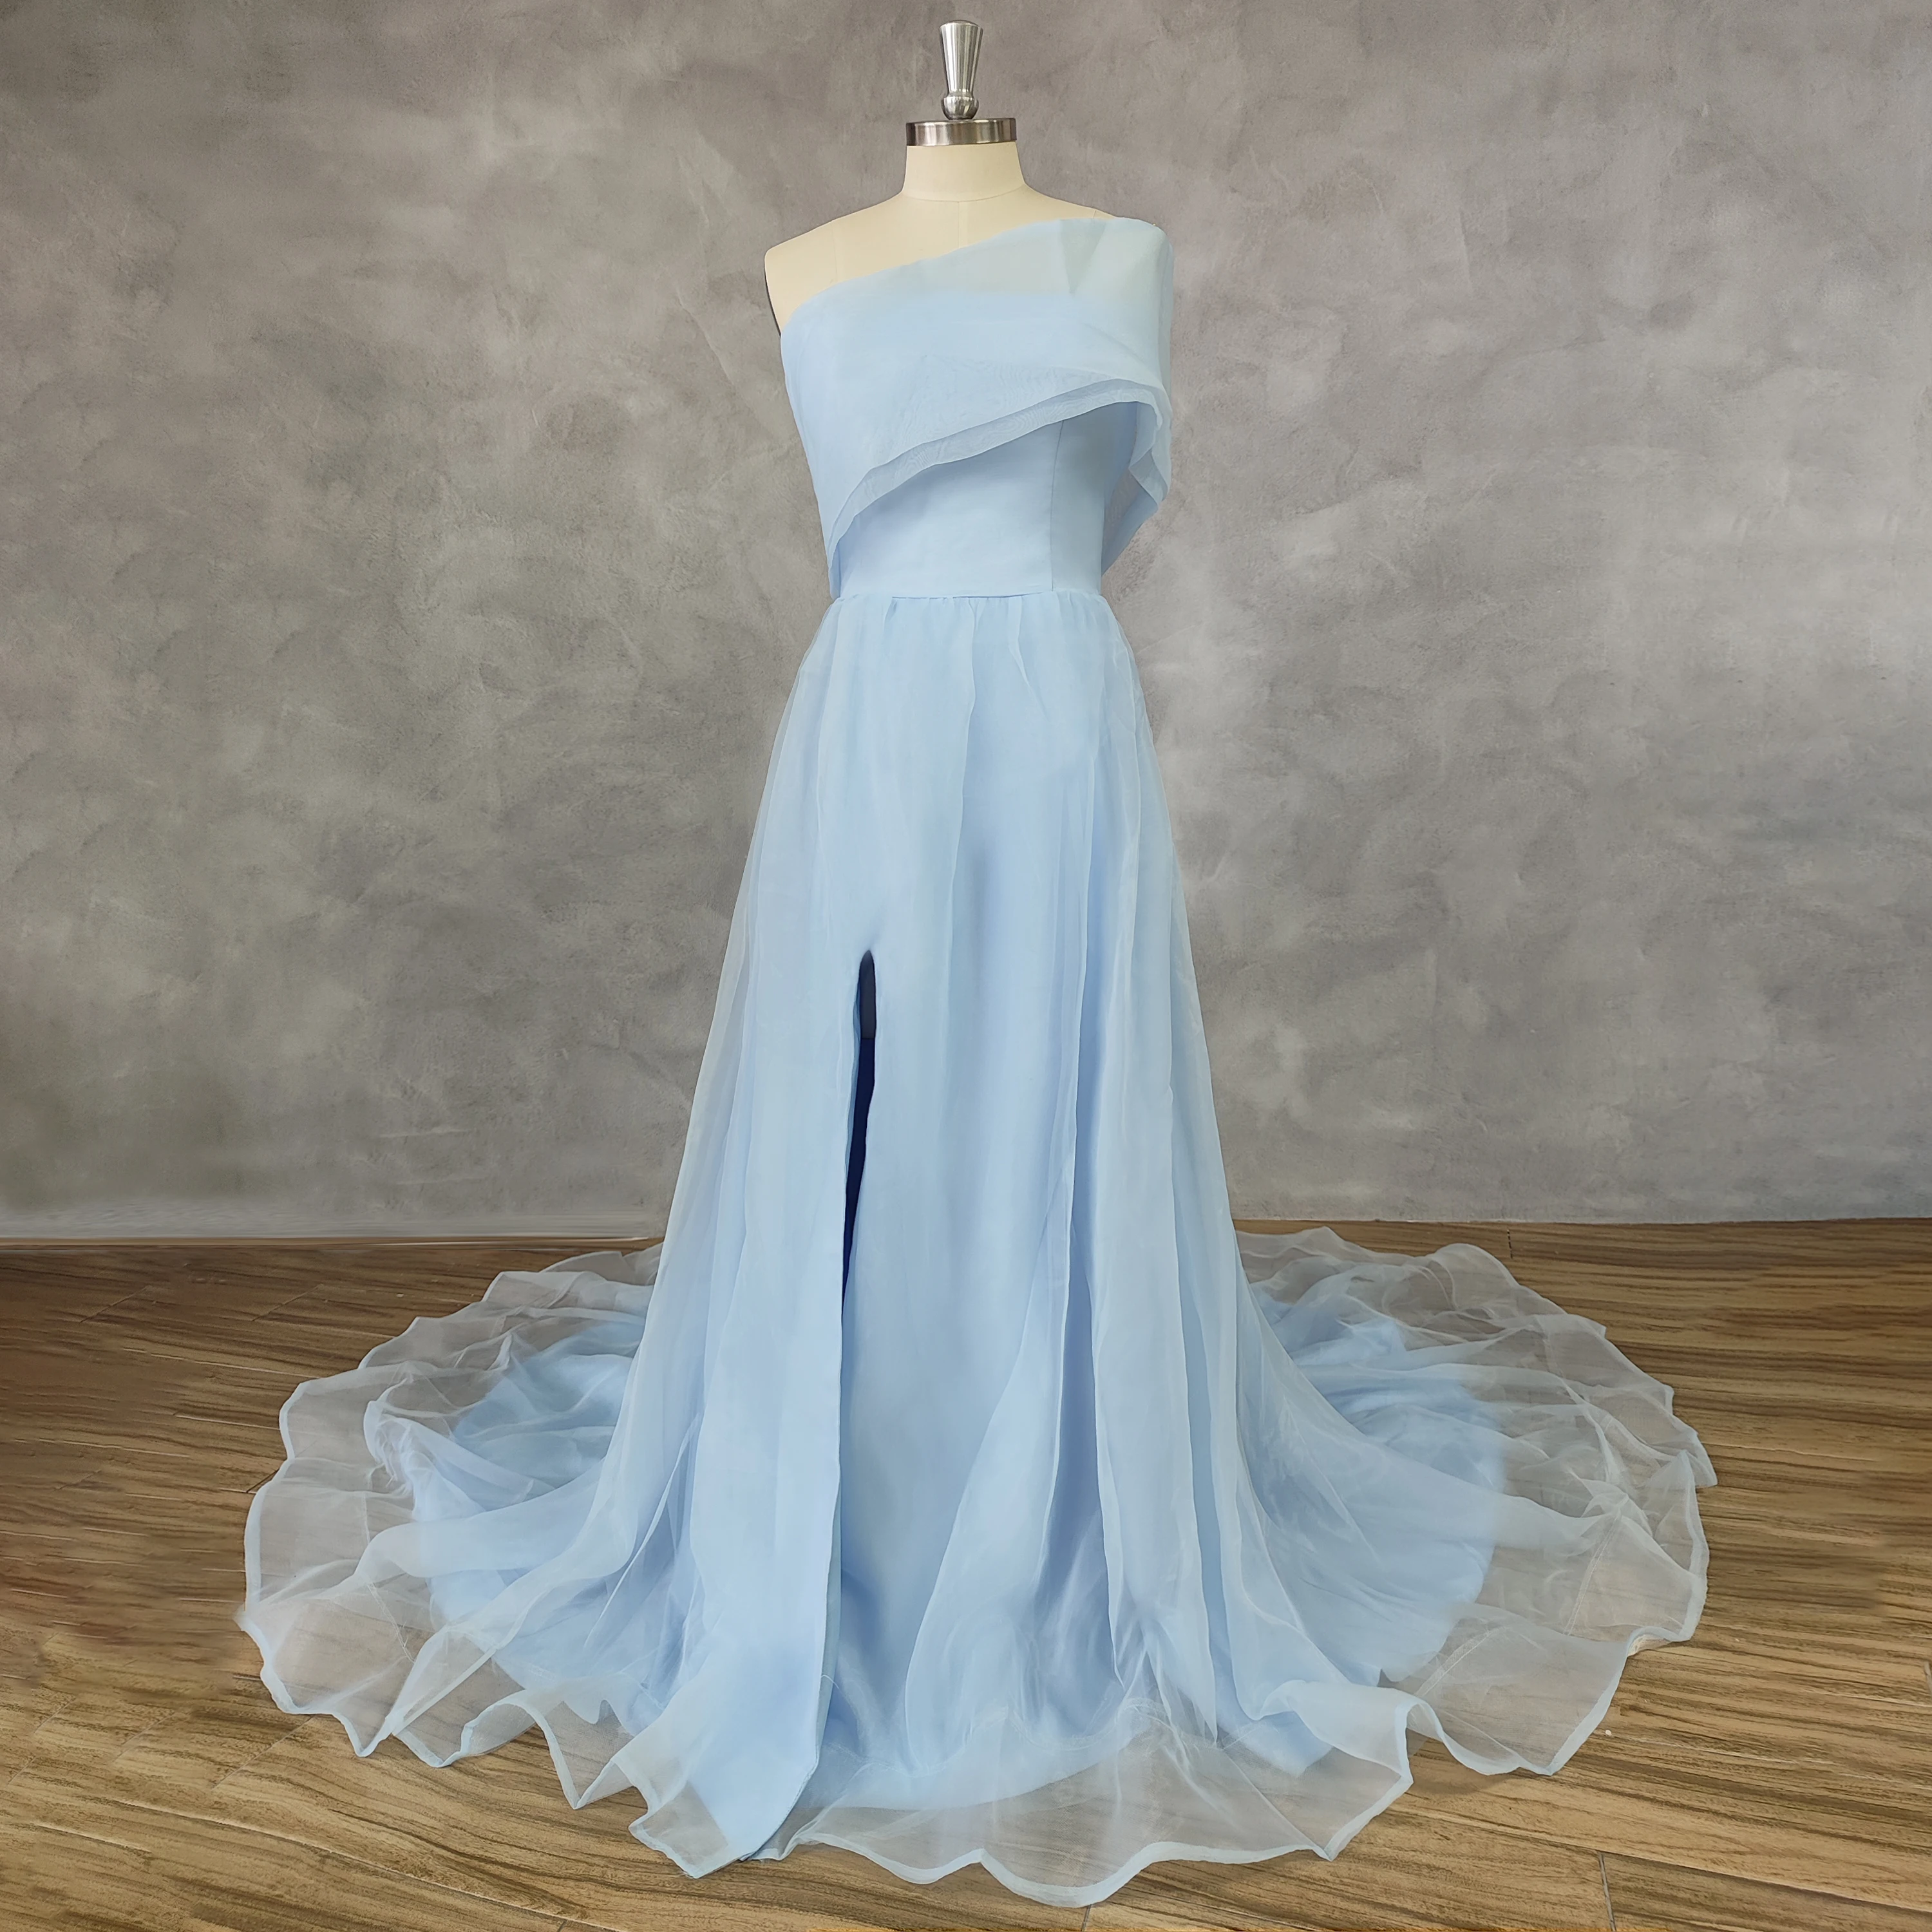 DIDEYTTAWL Реальные фотографии Голубое тюлевое платье для выпускного вечера с одним плечом, высокий разрез сбоку, трапециевидное вечернее платье в пол на молнии сзади . ' - ' . 0